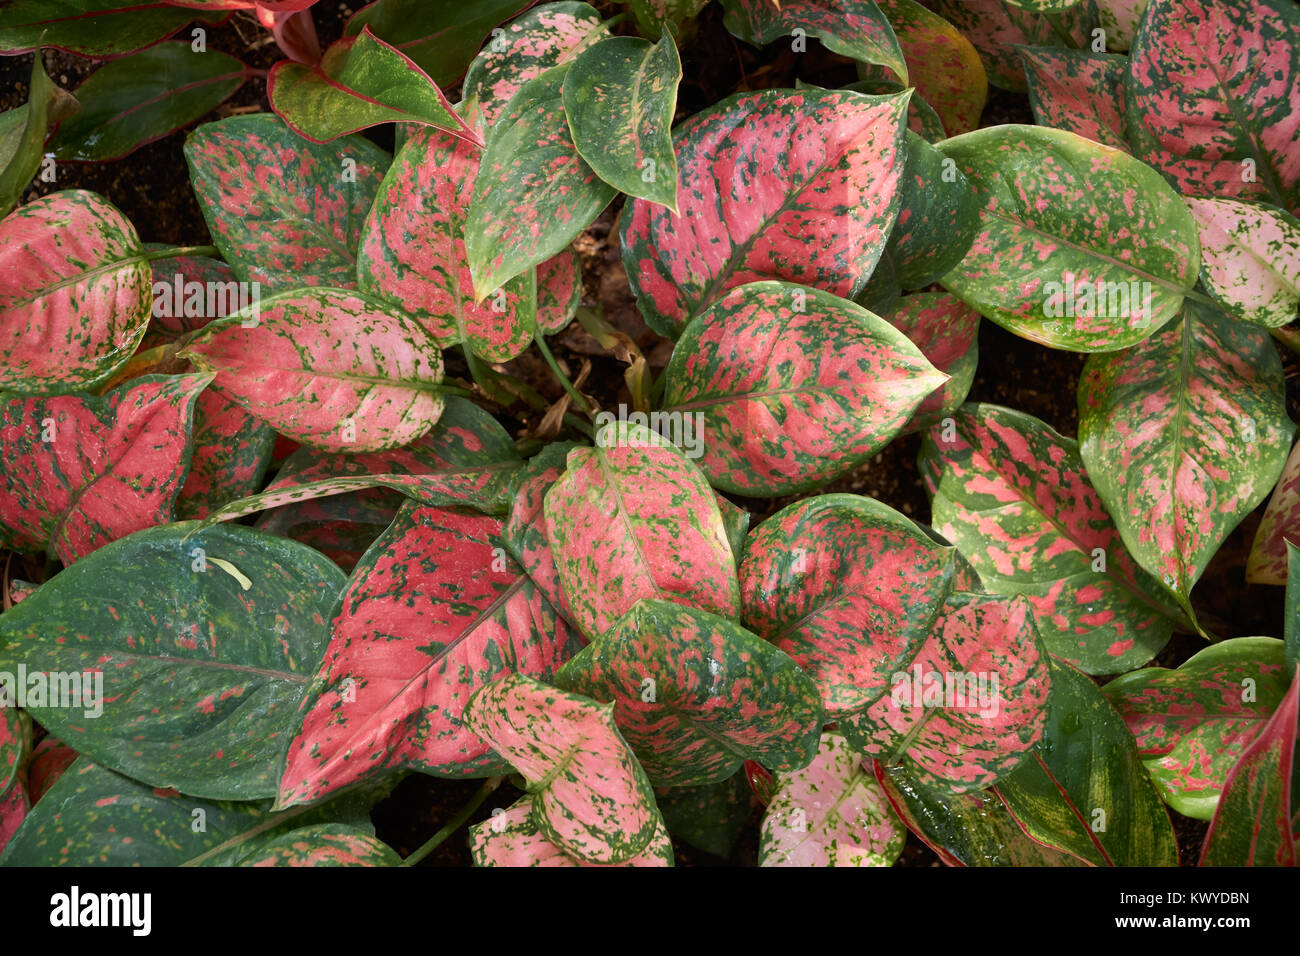 Aglaonema siam Aurora, auch als rote Aglaonema oder Chinesischen immergrünen, eine Gattung von Blütenpflanzen in der Arum Familie bekannt. Stockfoto